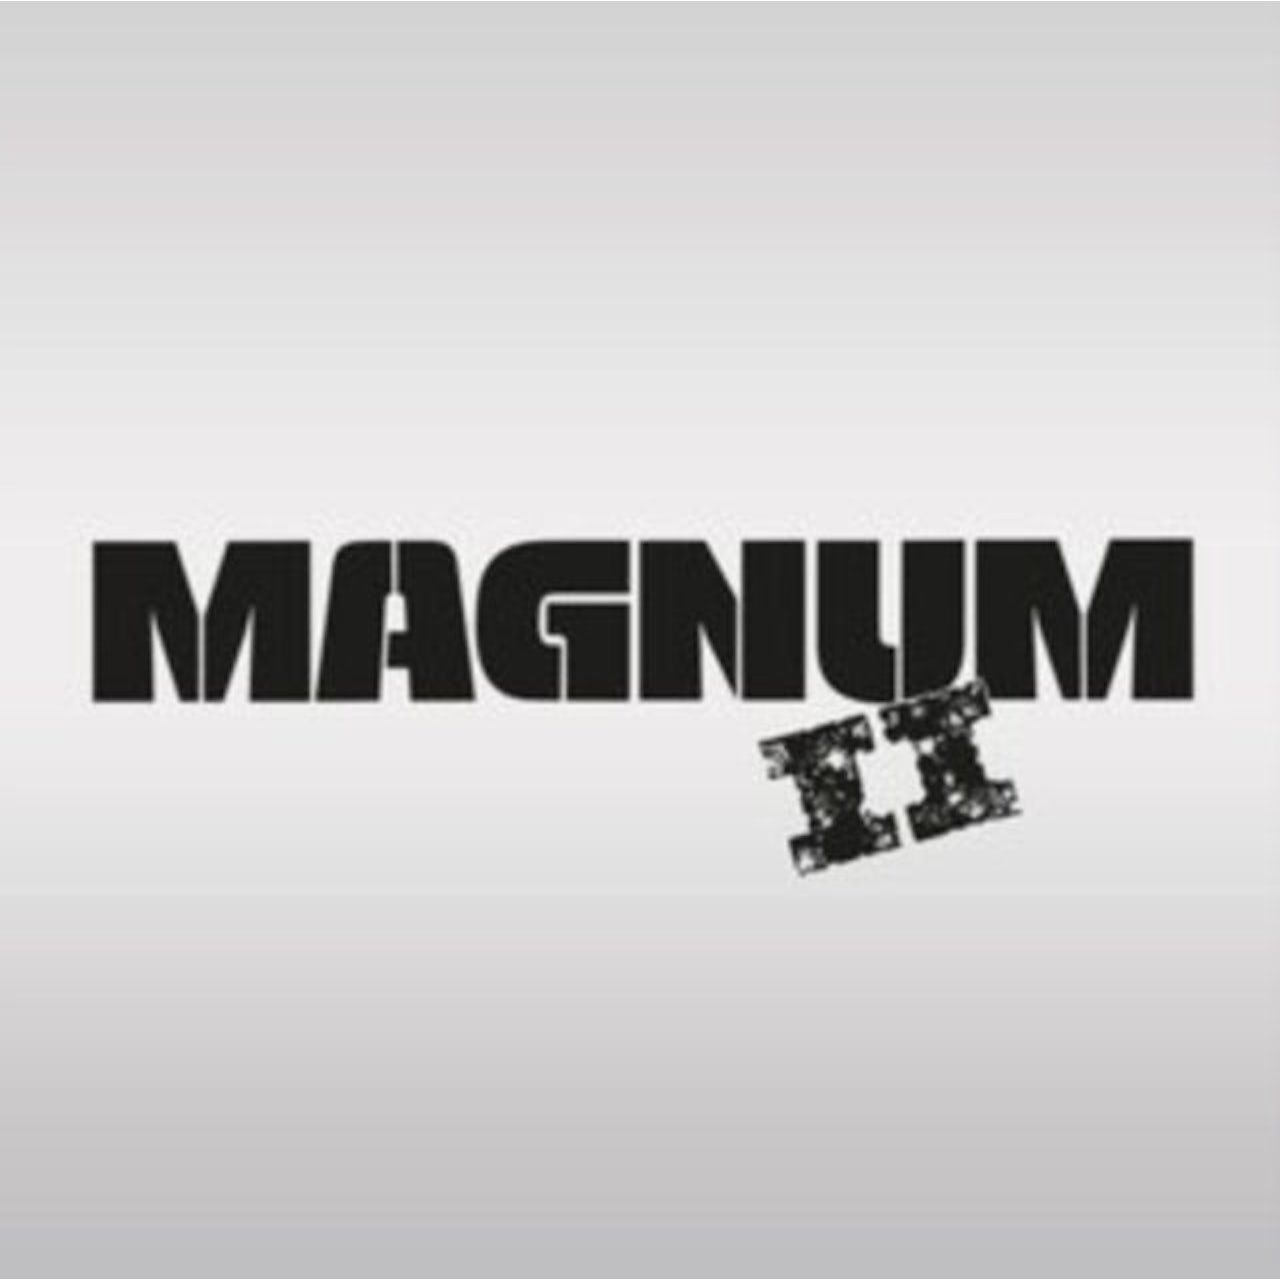 8719262020252, Виниловая пластинка Magnum, Magnum II magnum виниловая пластинка magnum magnum ii coloured